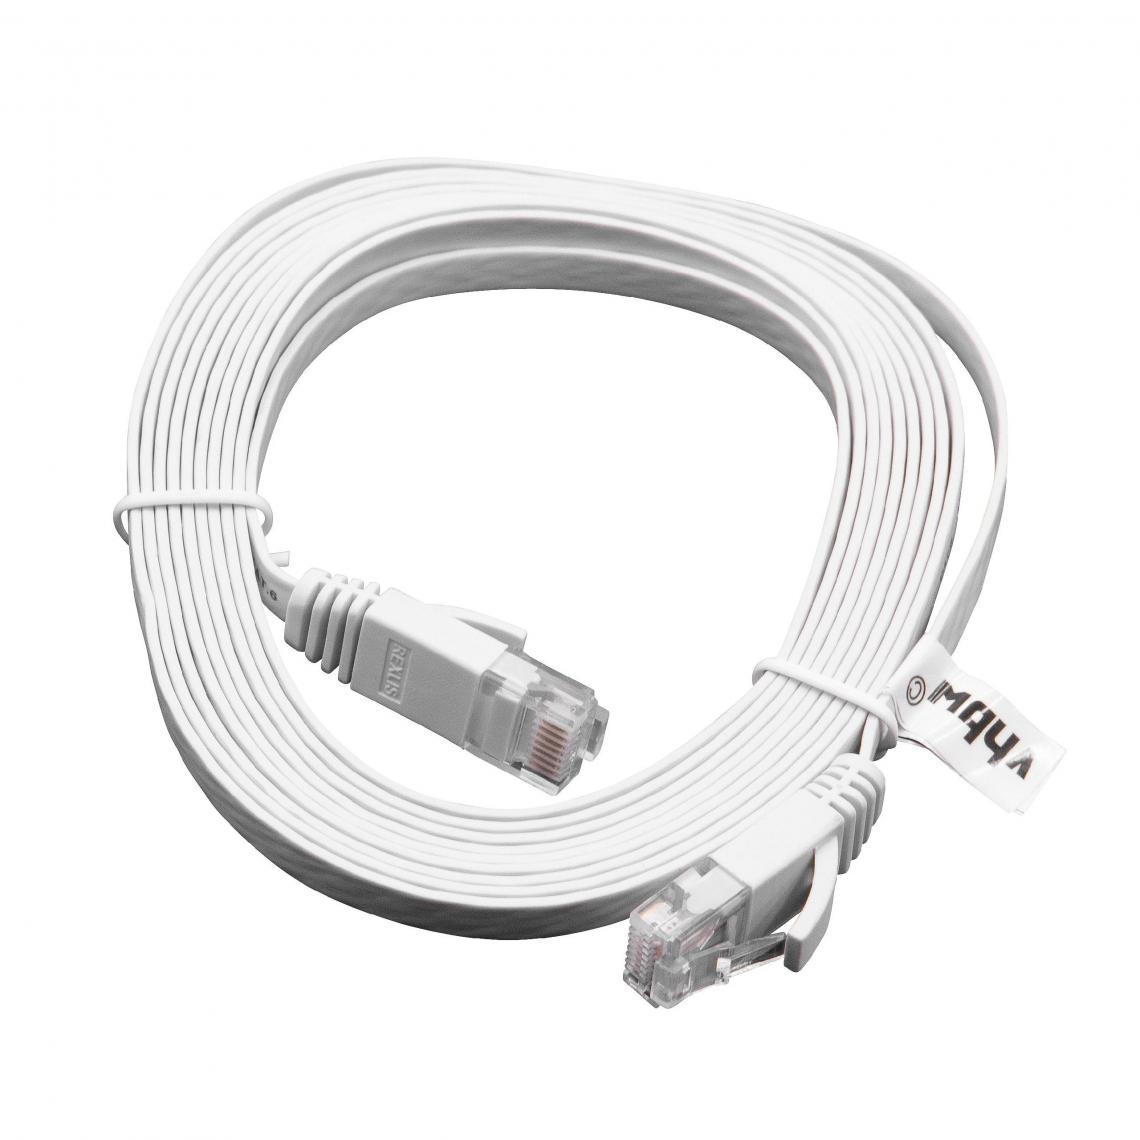 Vhbw - vhbw câble de réseau câble LAN Cat6 3m blanc câble plat - Accessoires alimentation